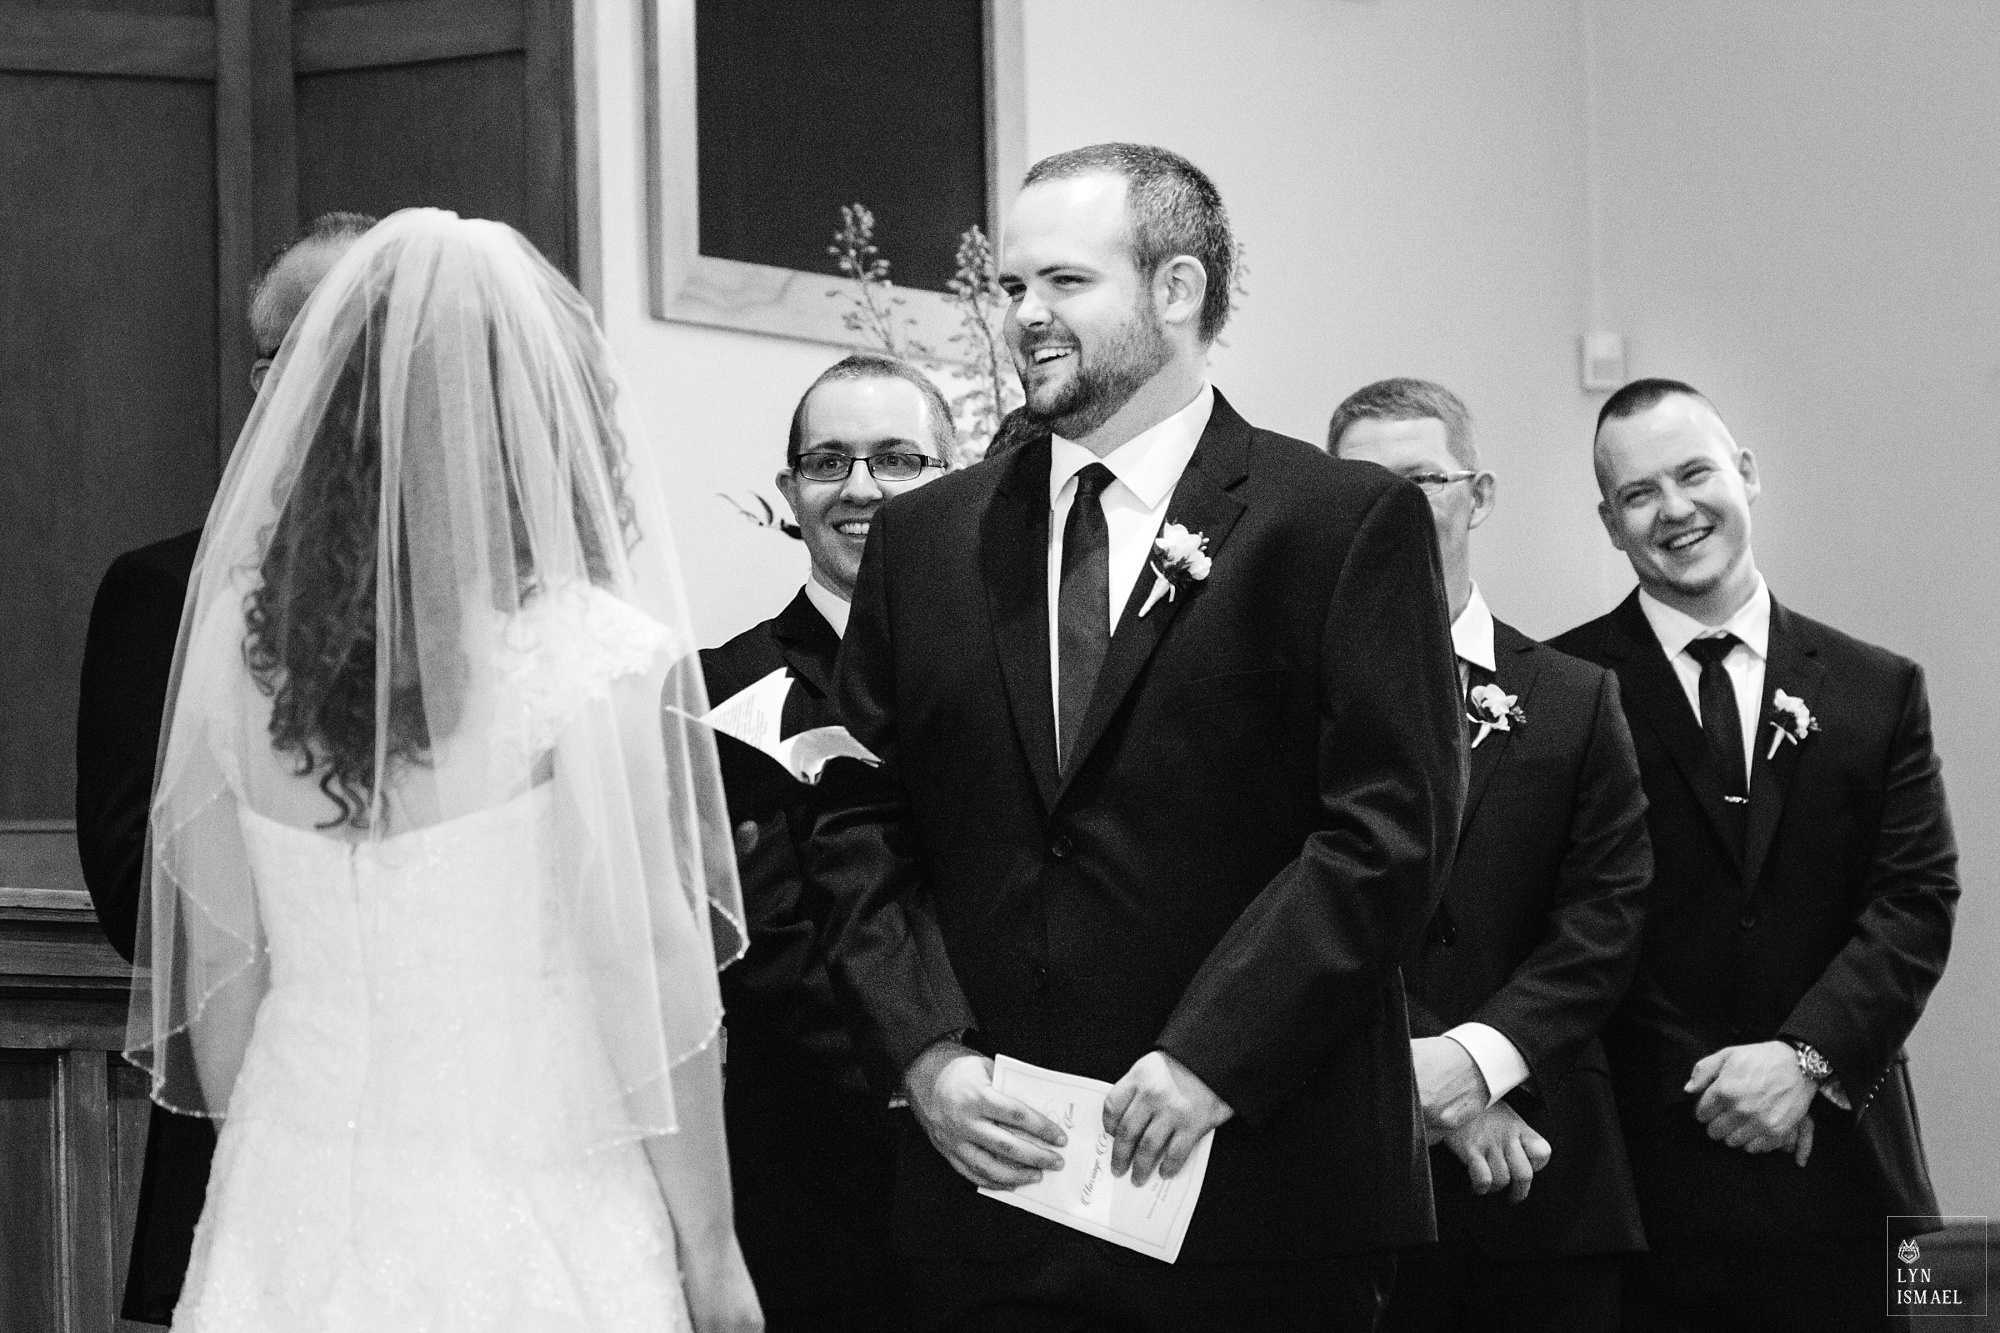 Wedding ceremony at the Kitchener Mennonite Brethren Church